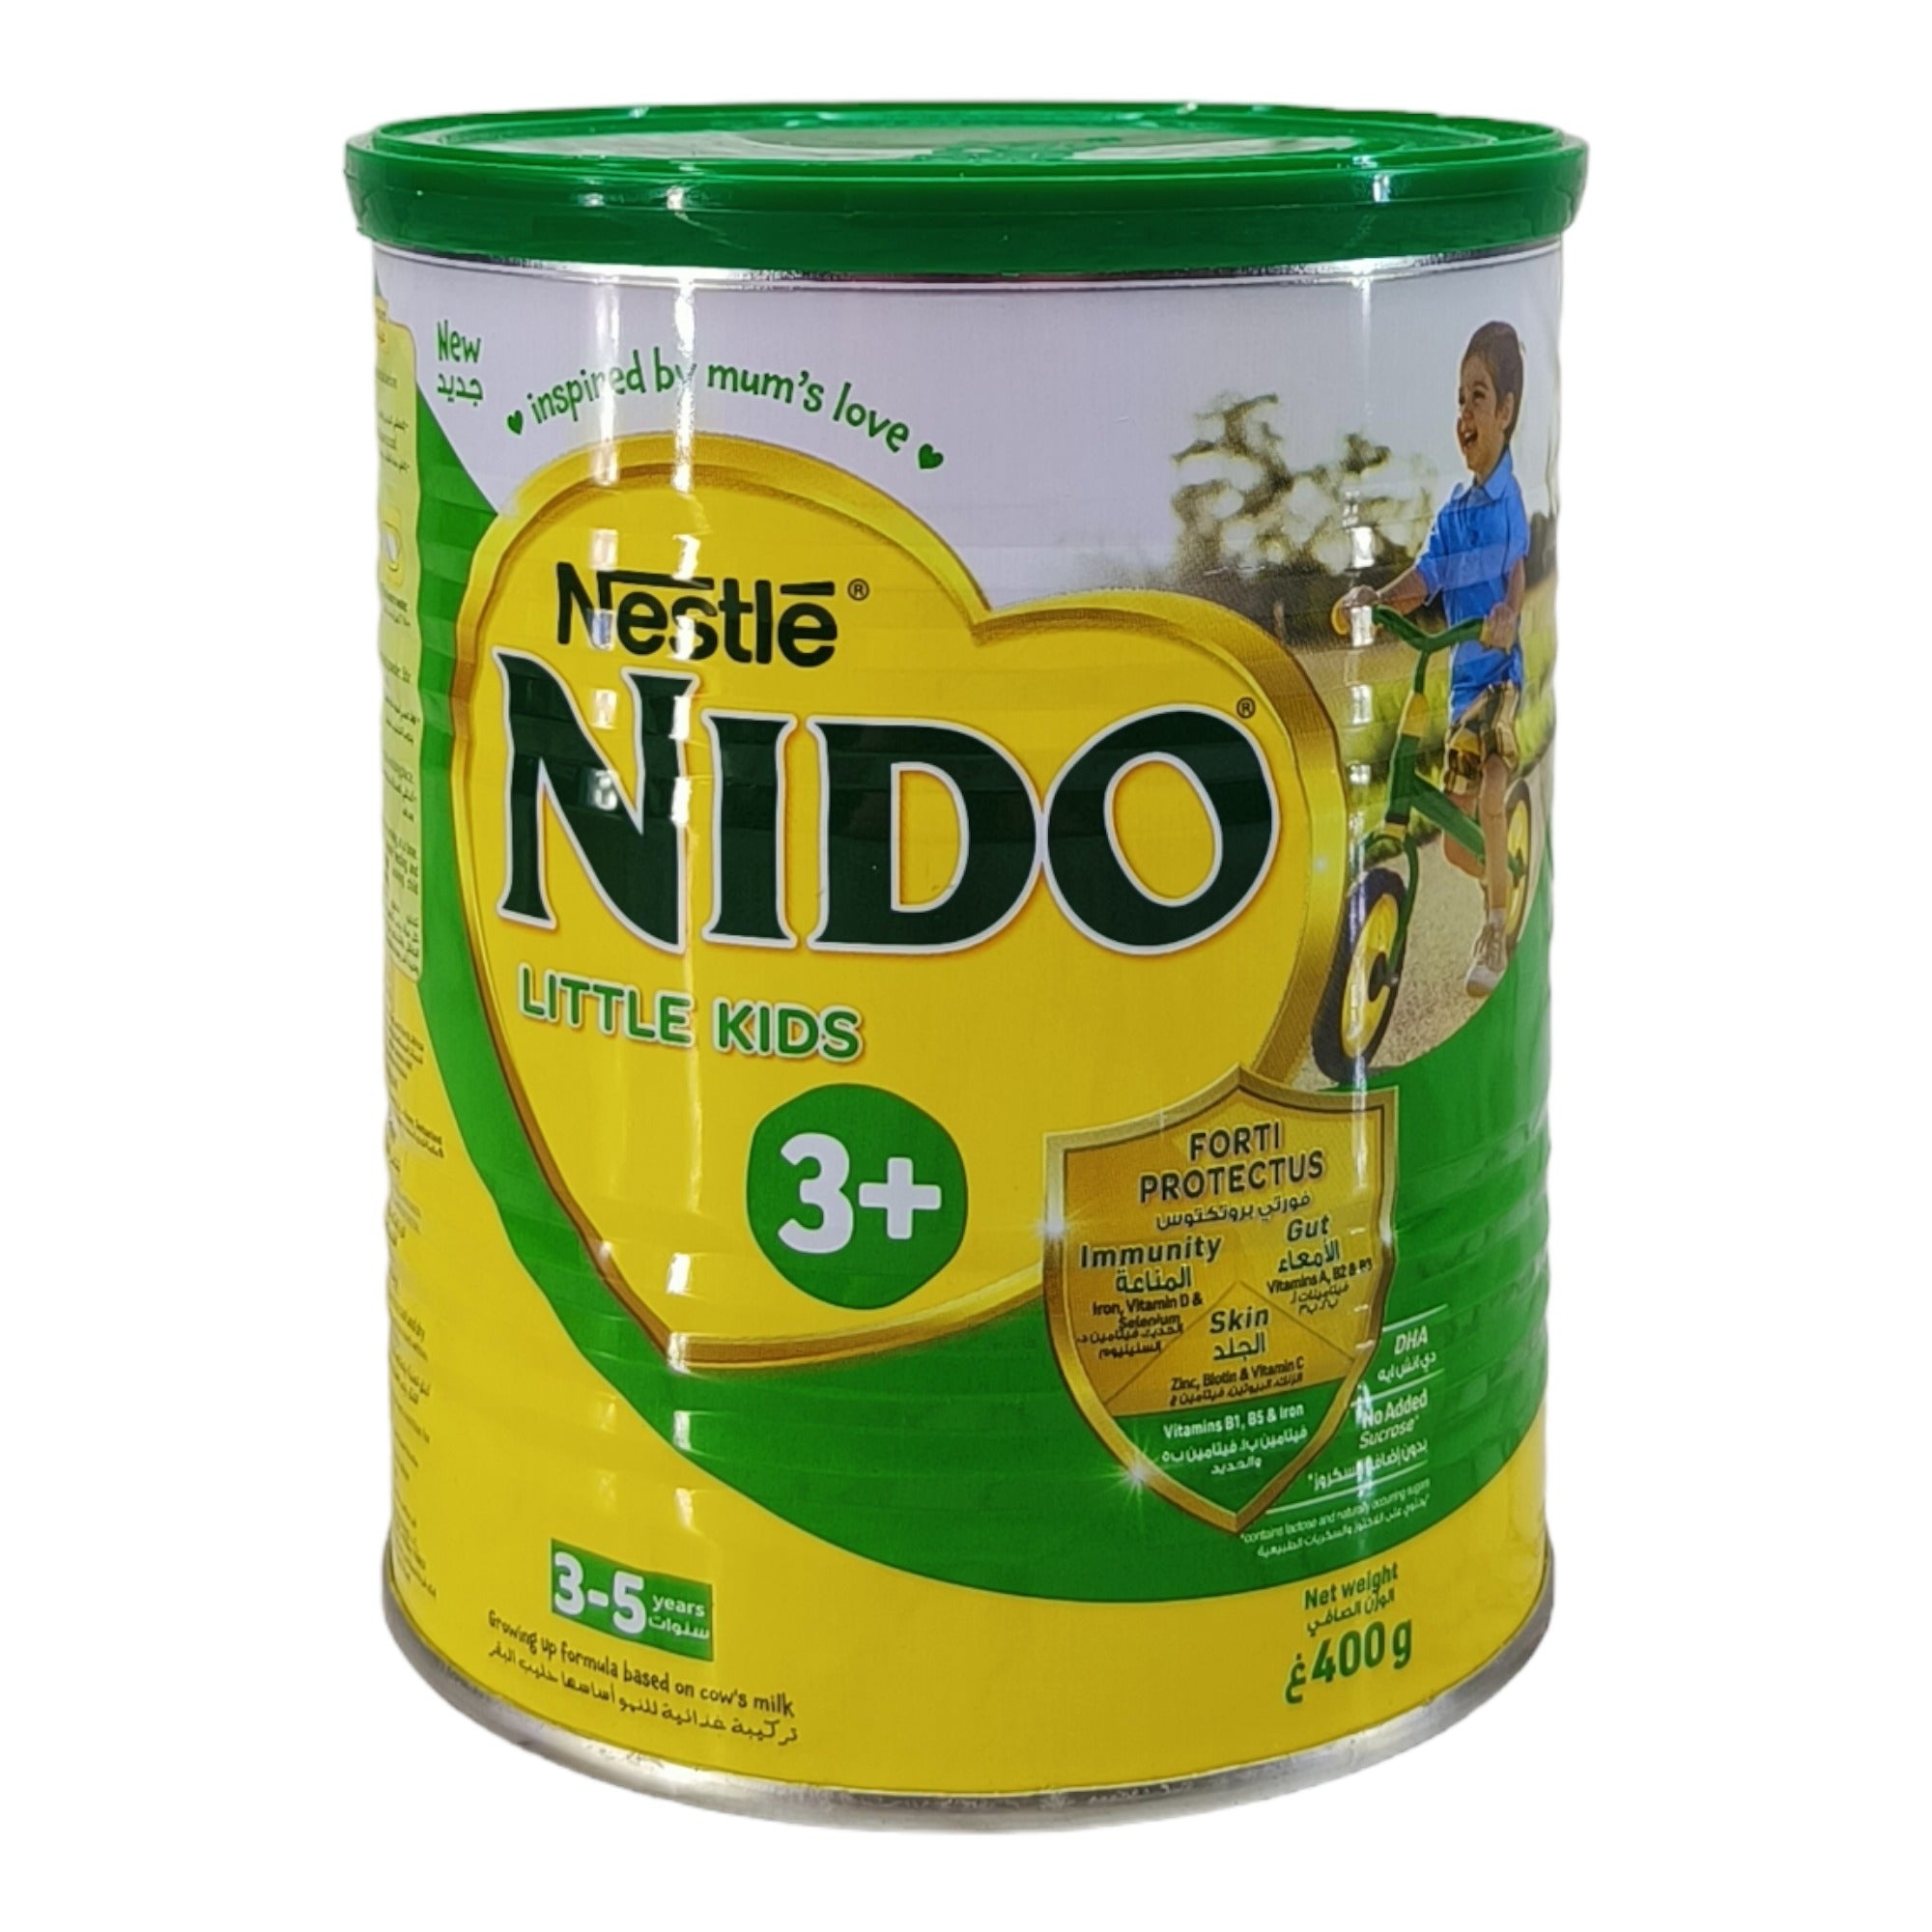 Nestle Nido Little Kids, 3+ (3-5 yrs) - 400g